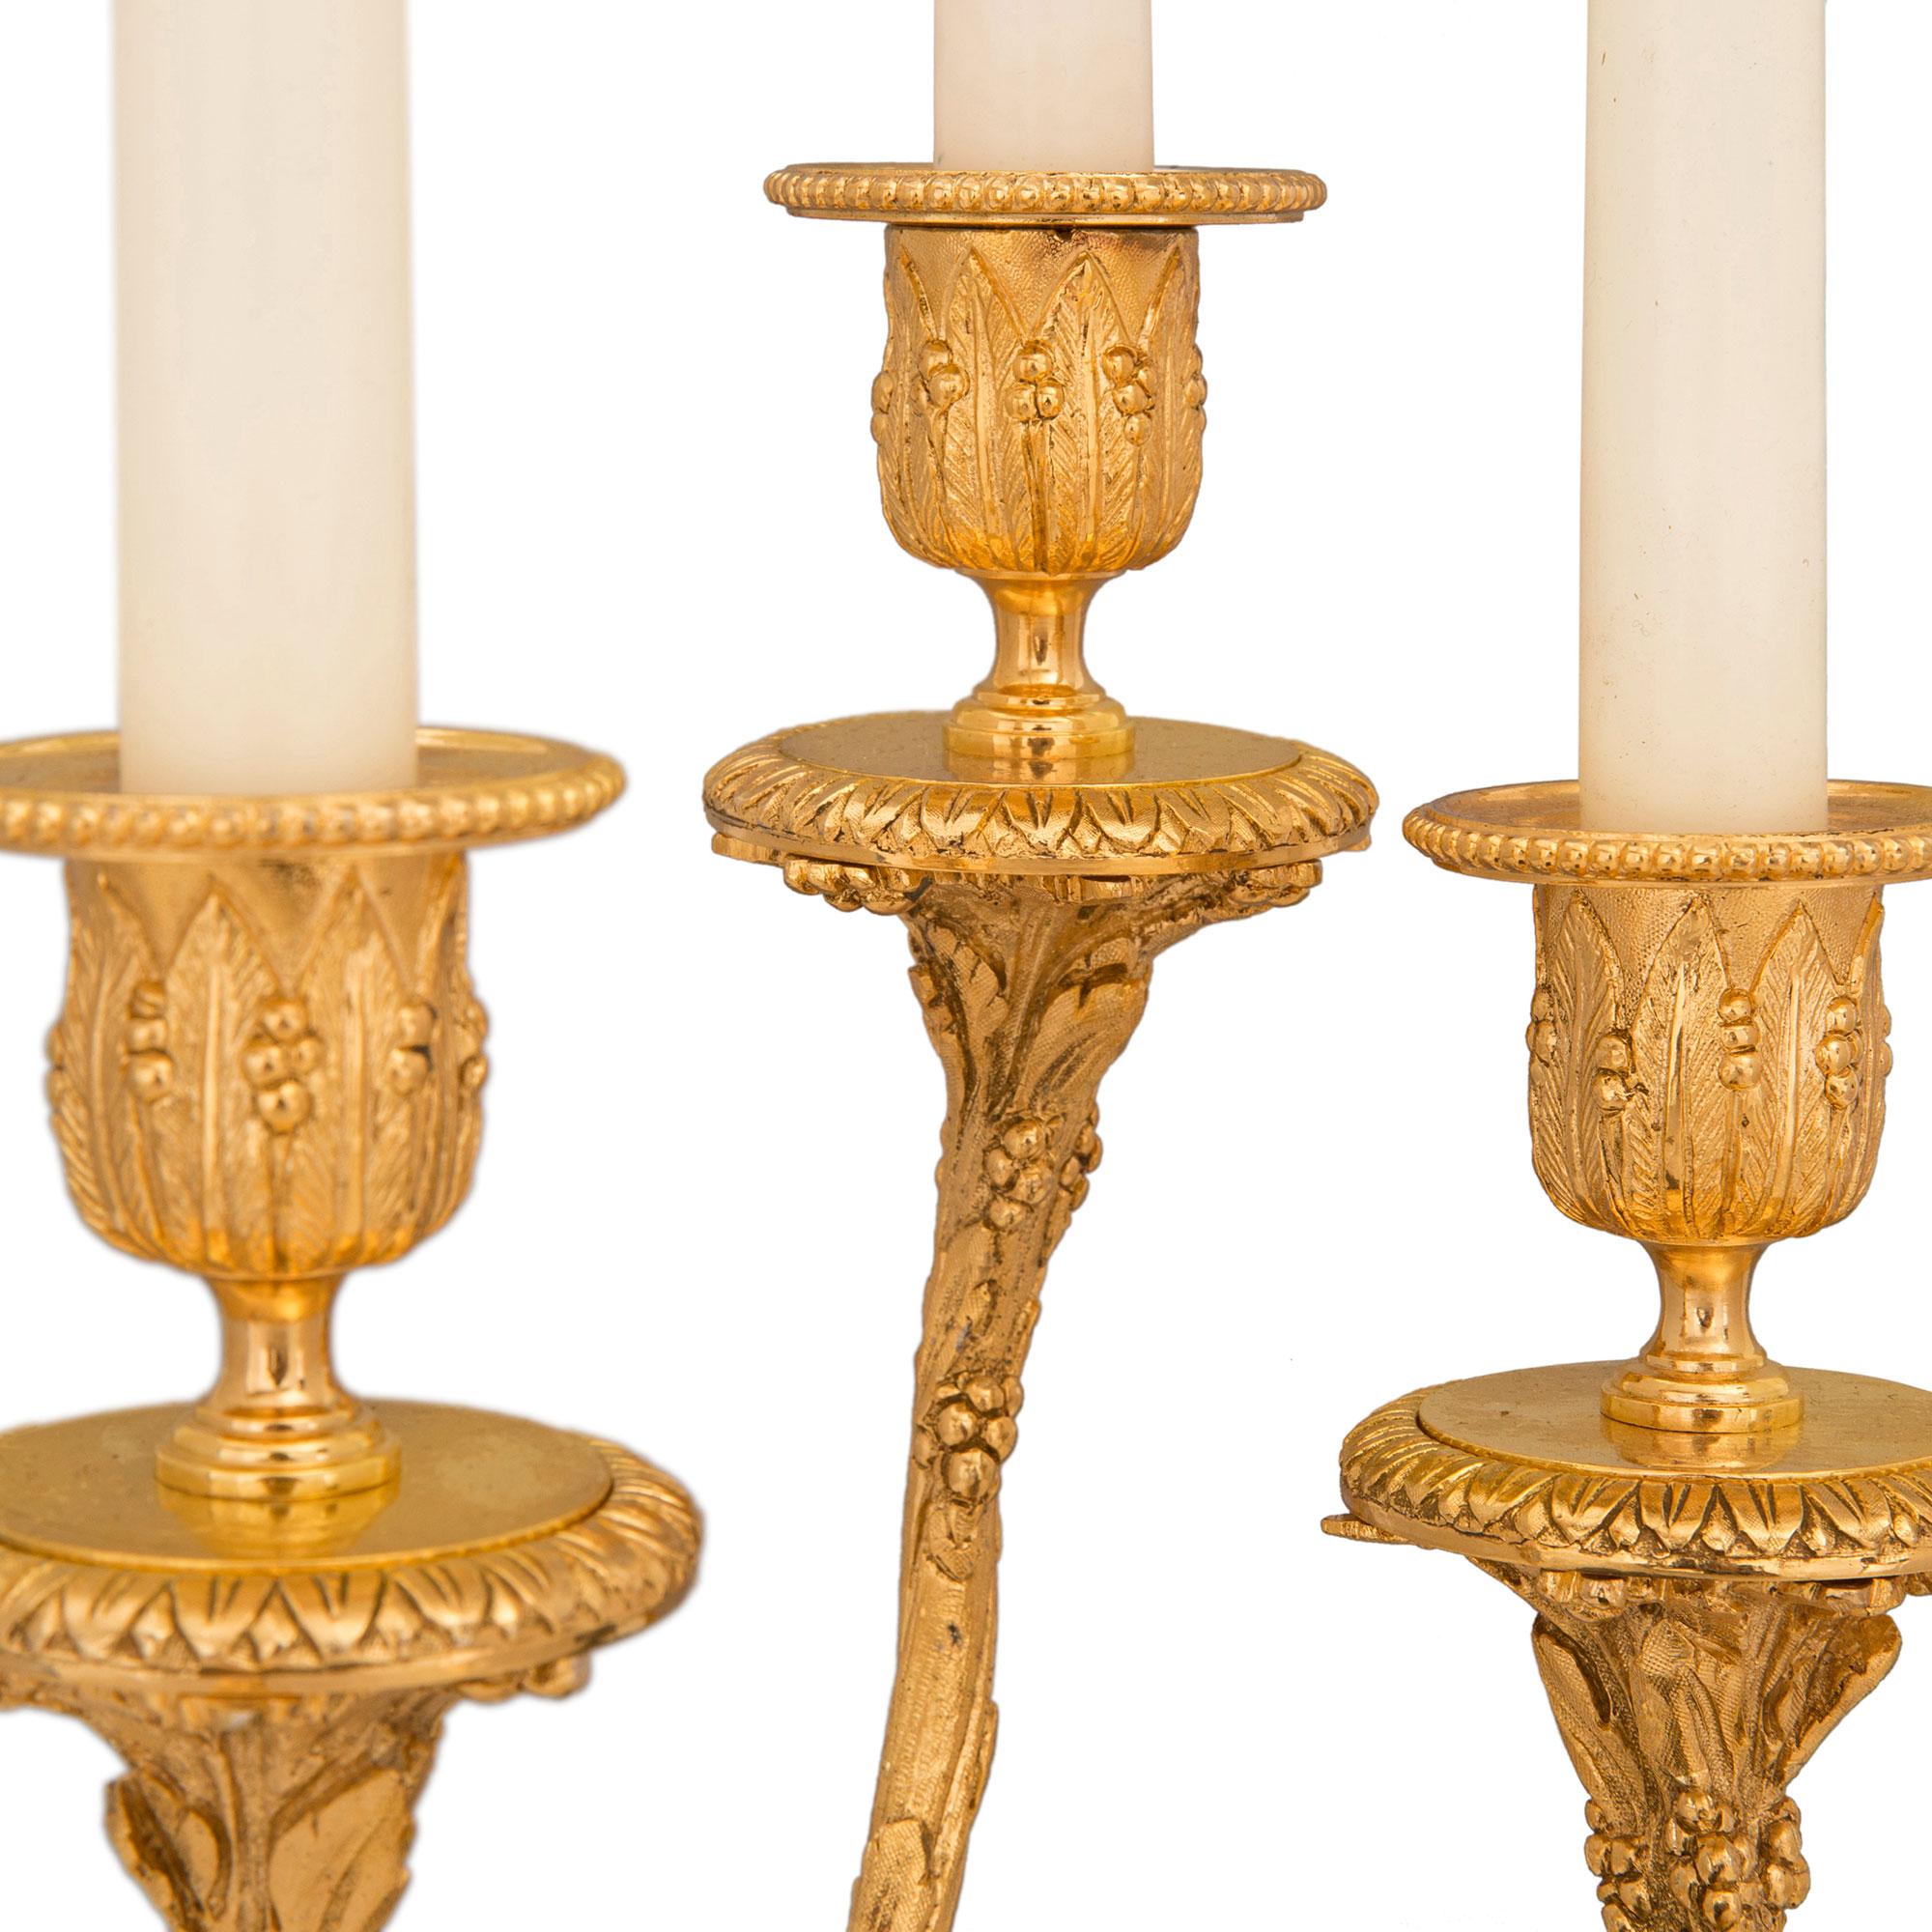 Patiné Paire de candélabres français de style Louis XVI du 19ème siècle, attribués à Clodion en vente